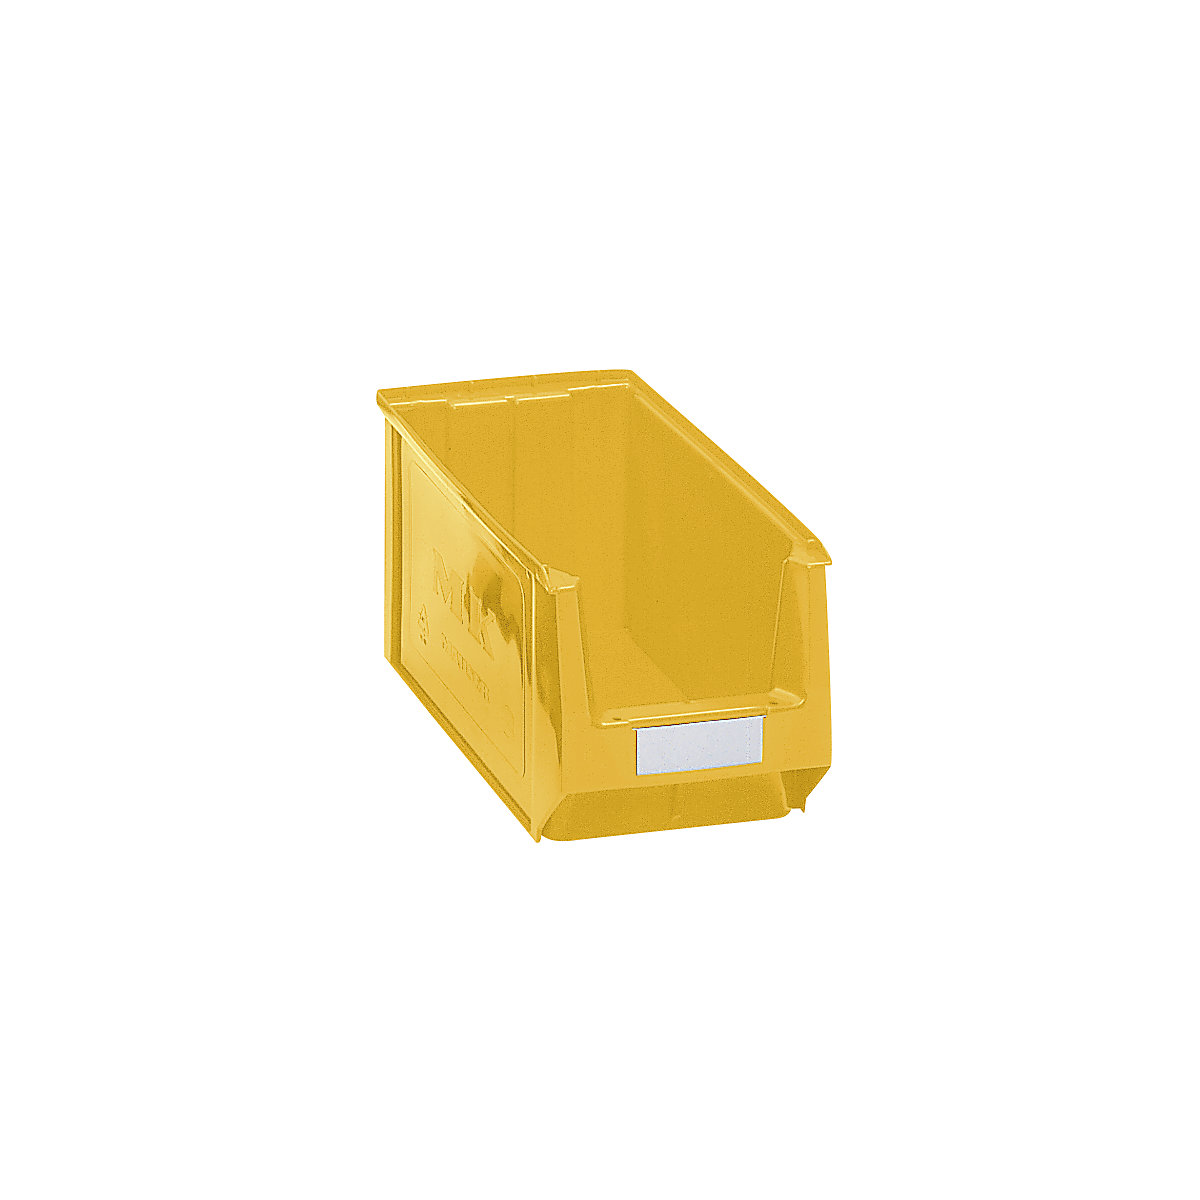 Přepravka s viditelným obsahem z polyetylénu – mauser, d x š x v 350 x 210 x 200 mm, žlutá, bal.j. 10 ks-6